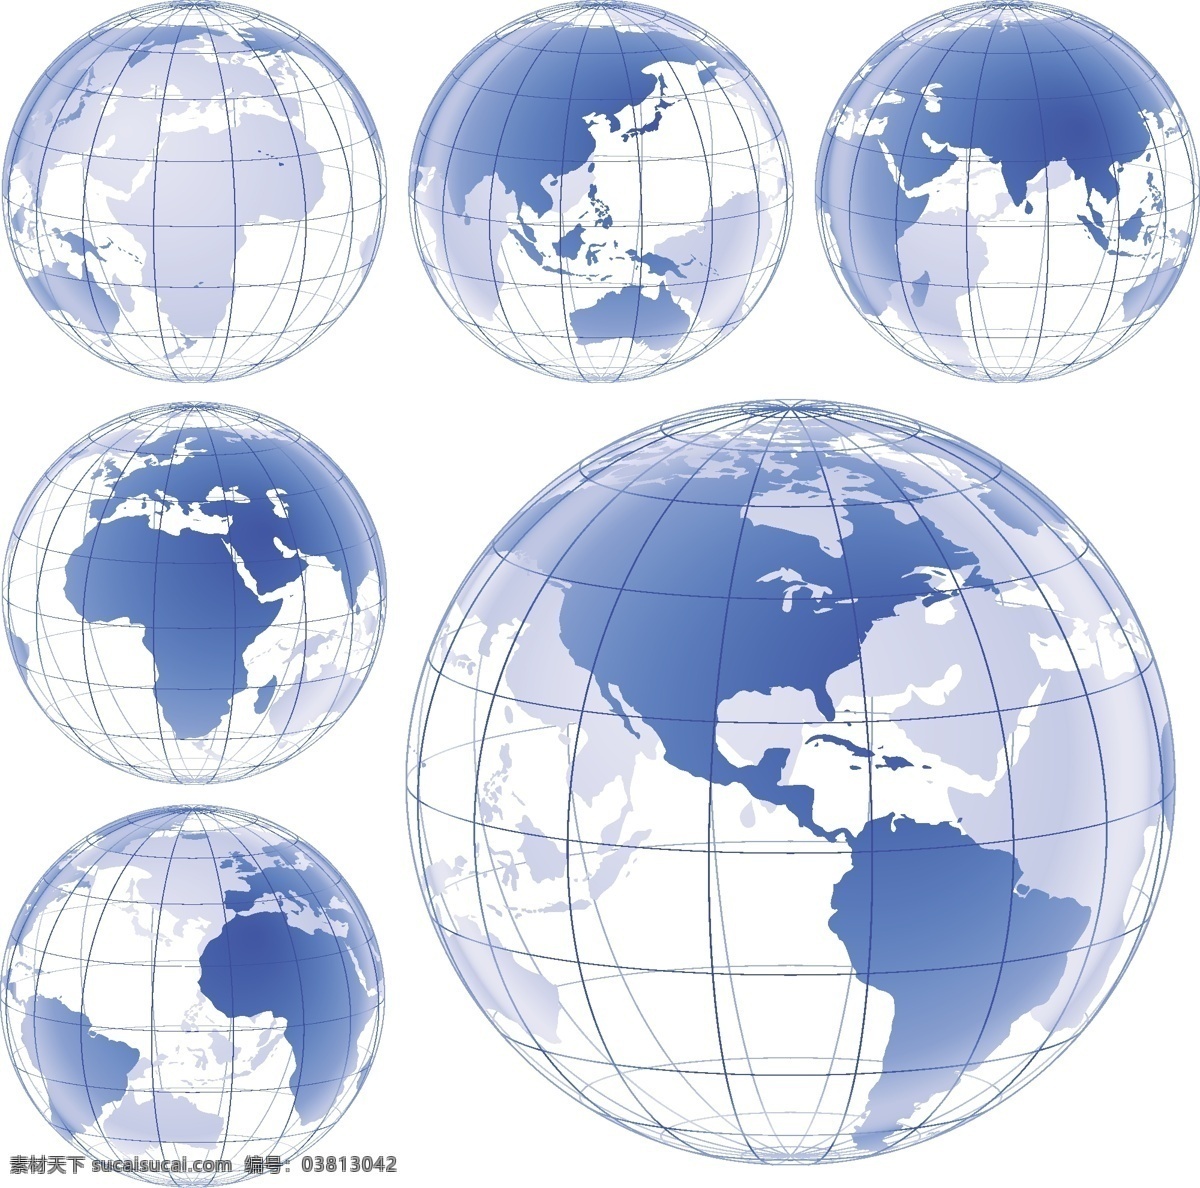 蓝色 地球 地图 矢量图 地球全貌 地球矢量 蓝色地球 地球下载 地球矢量下载 白色